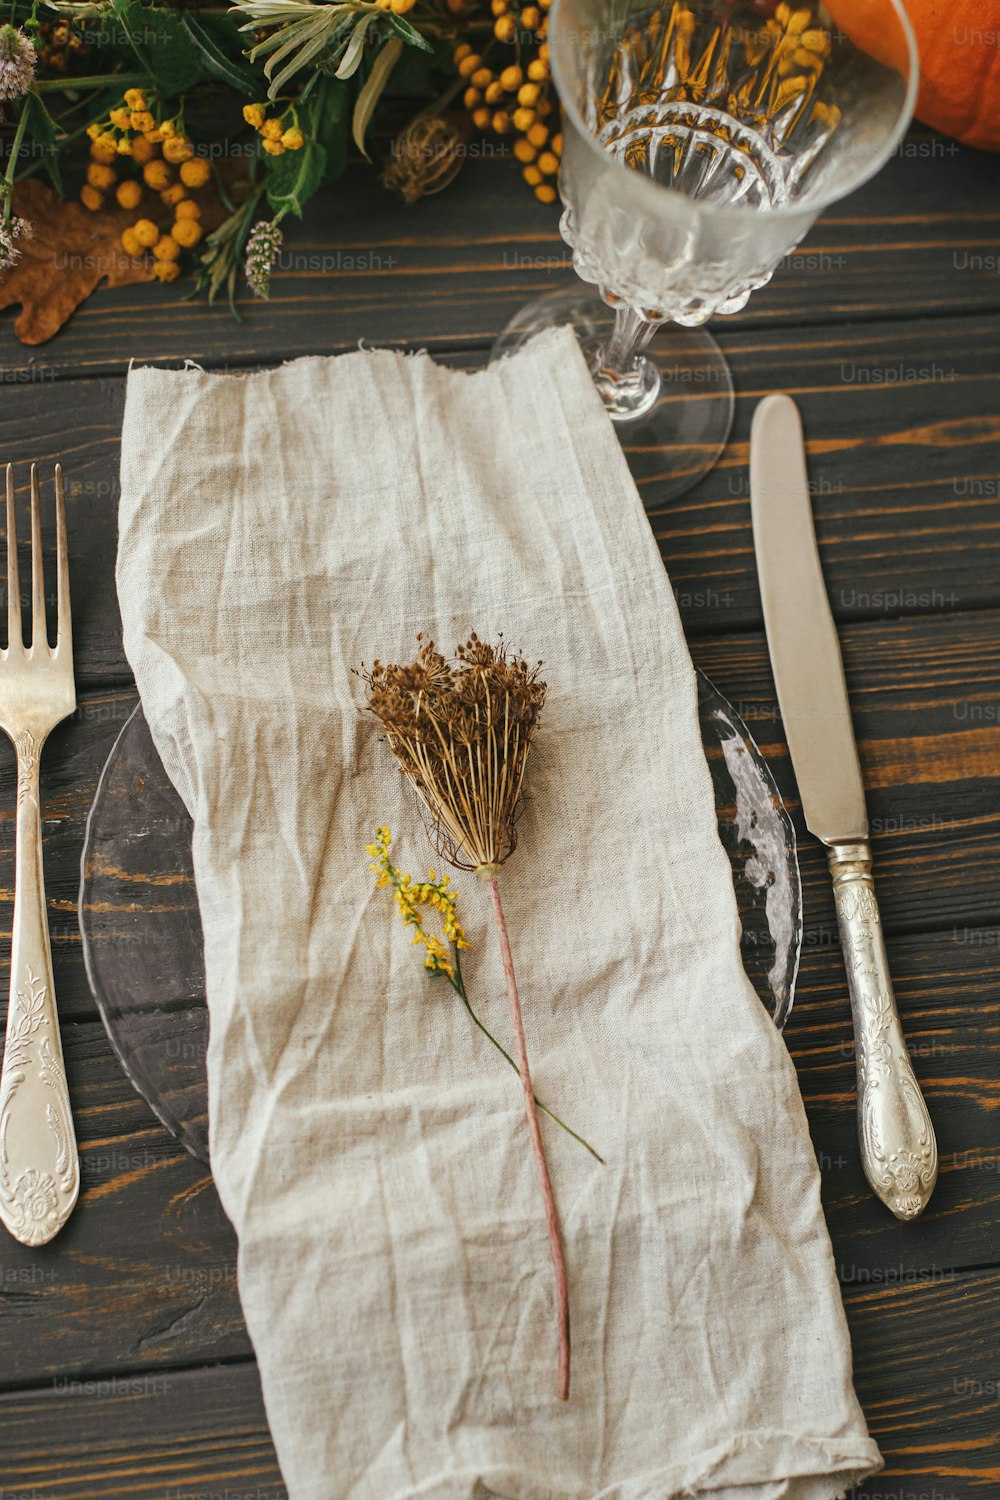 ヴィンテージのカトラリー、リネンナプキン、カボチャと秋の花のアレンジメントが置かれた木製のテーブルにハーブが置かれたモダンなプレート。農家の素朴な秋の結婚式。環境にやさしい感謝祭のディナーテーブルセッティング